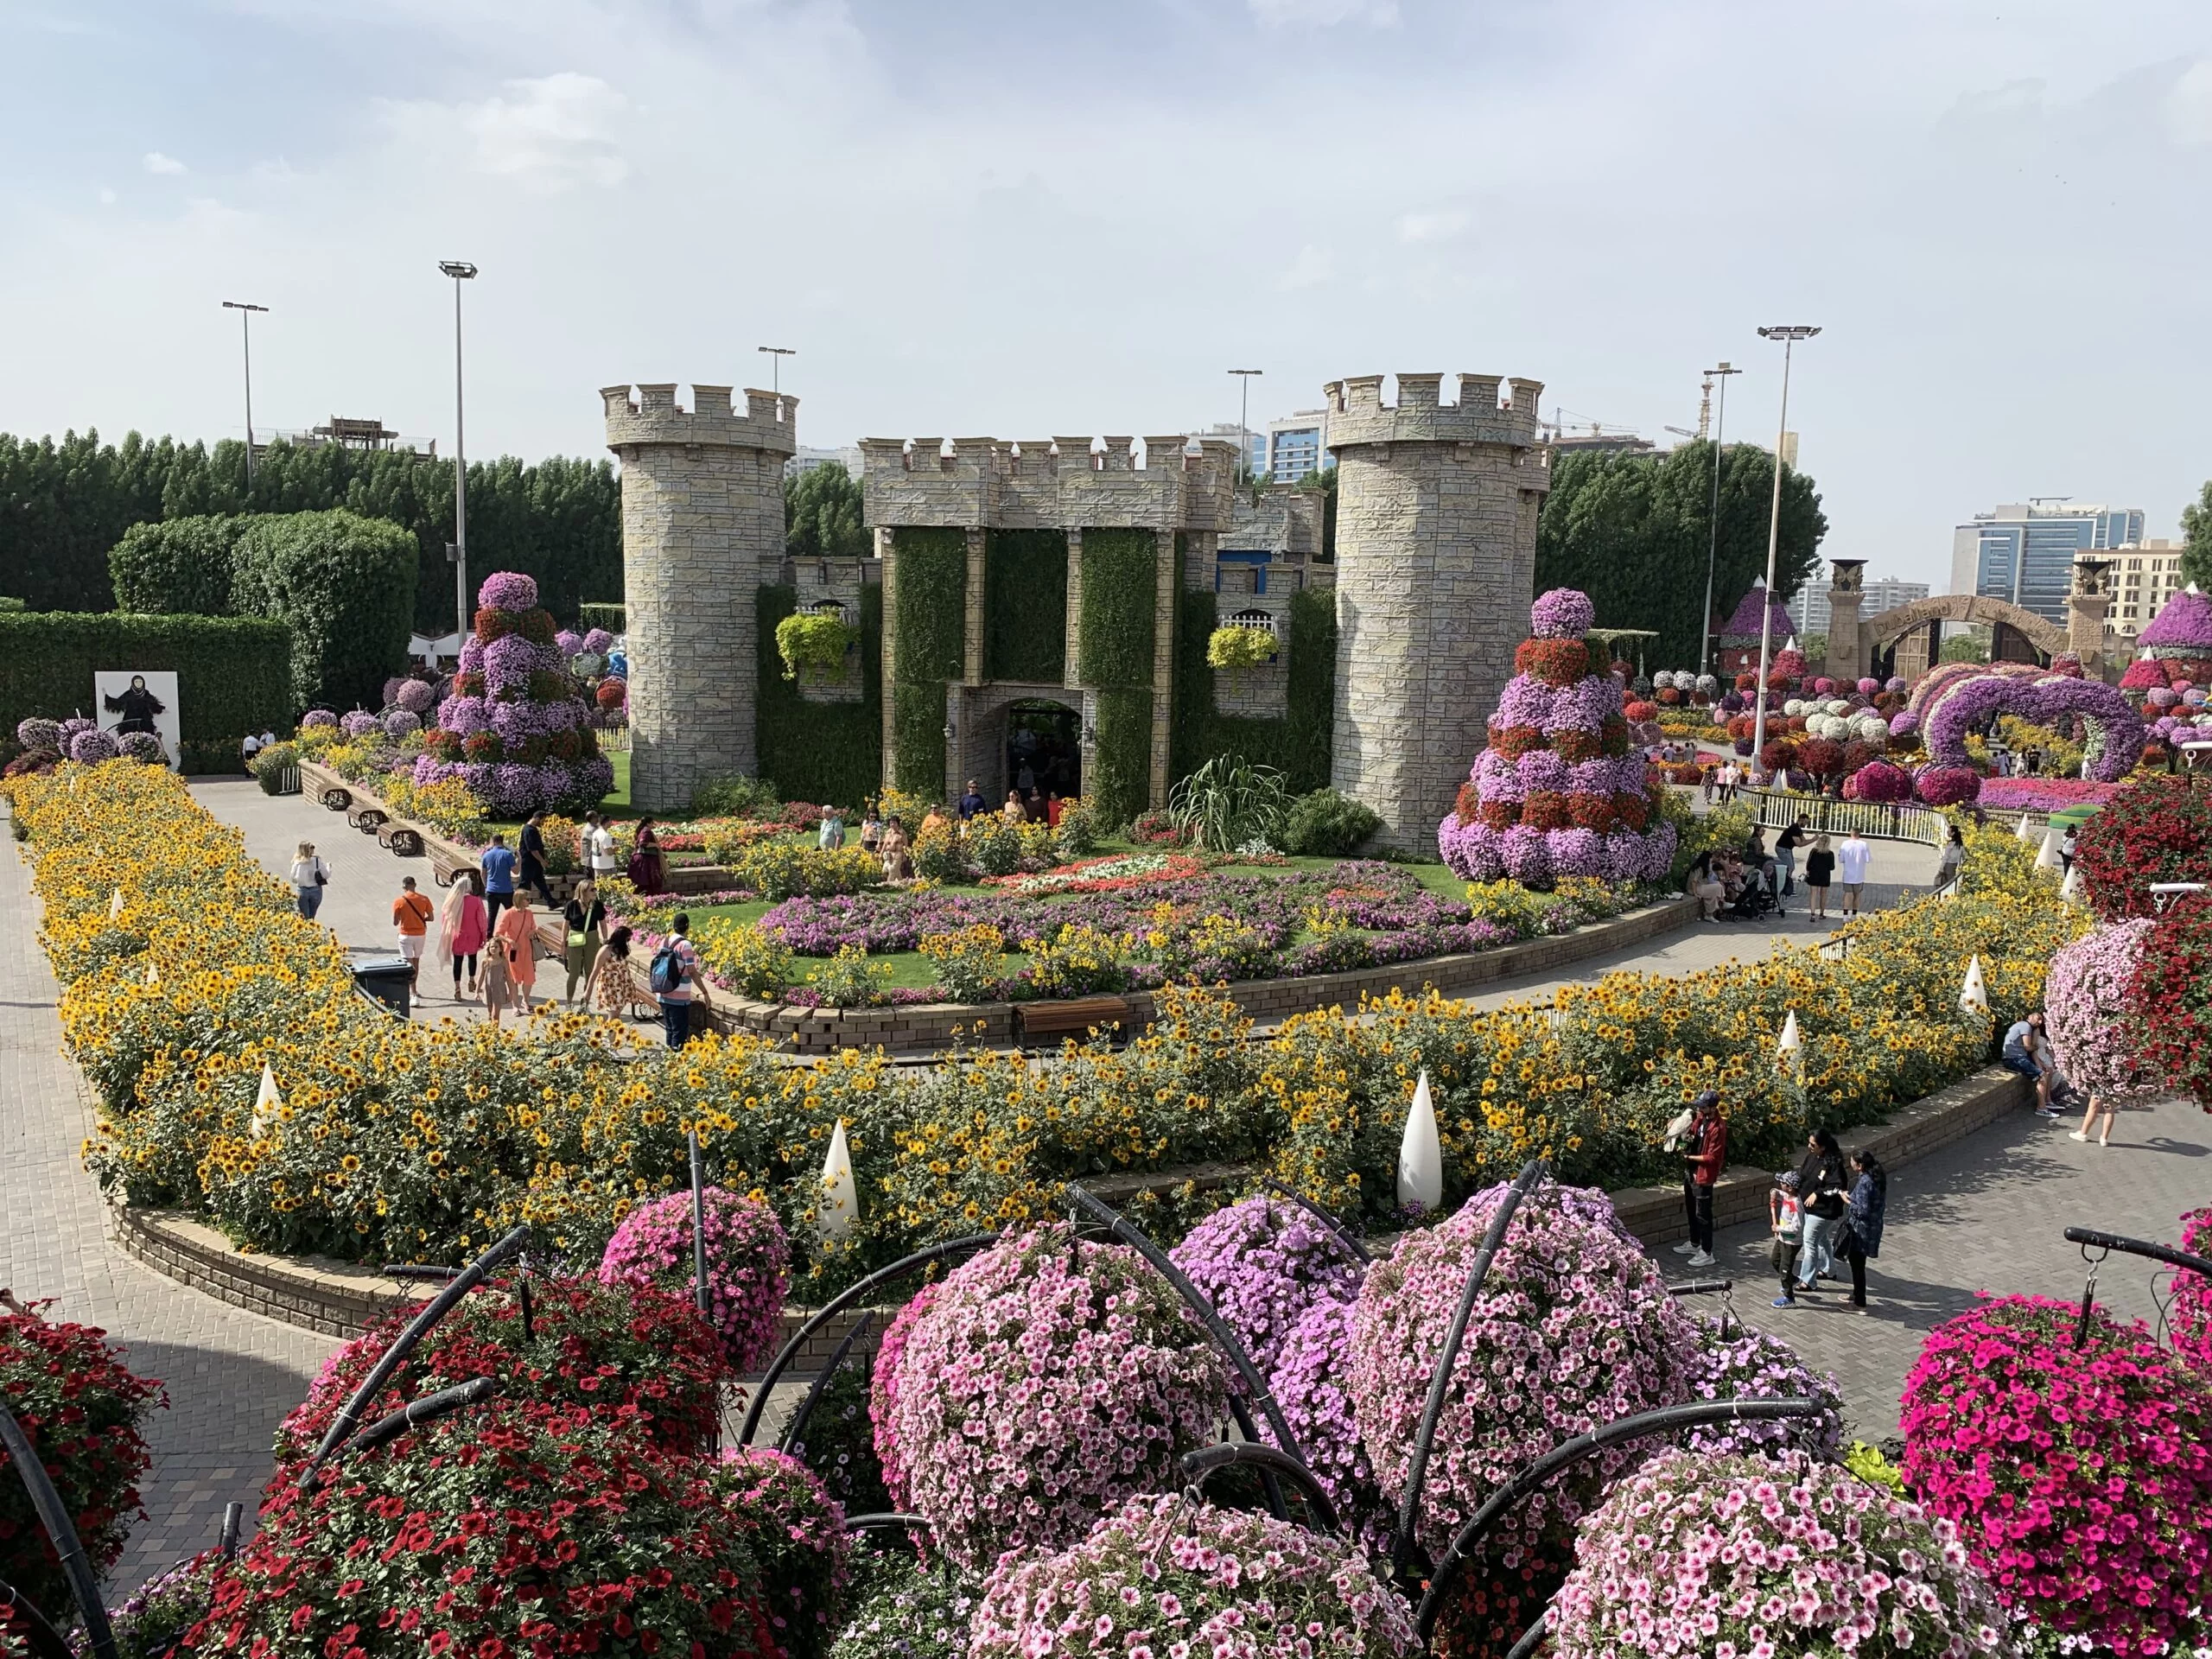 Floral Castle - Miracle Garden in Dubai